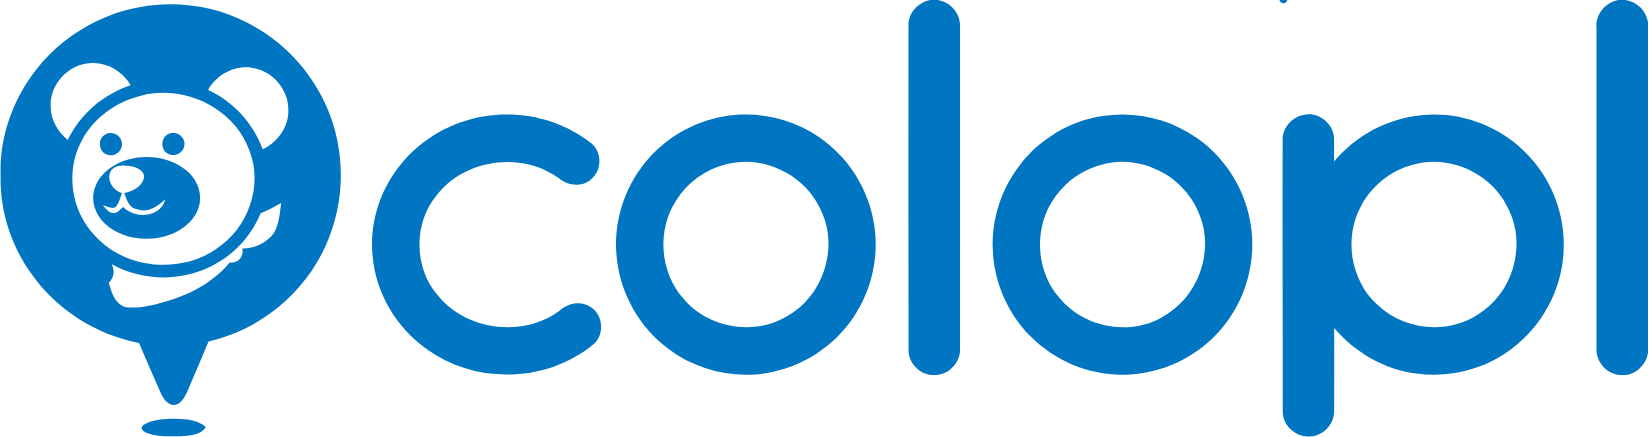 COLOPL logo large (transparent PNG)